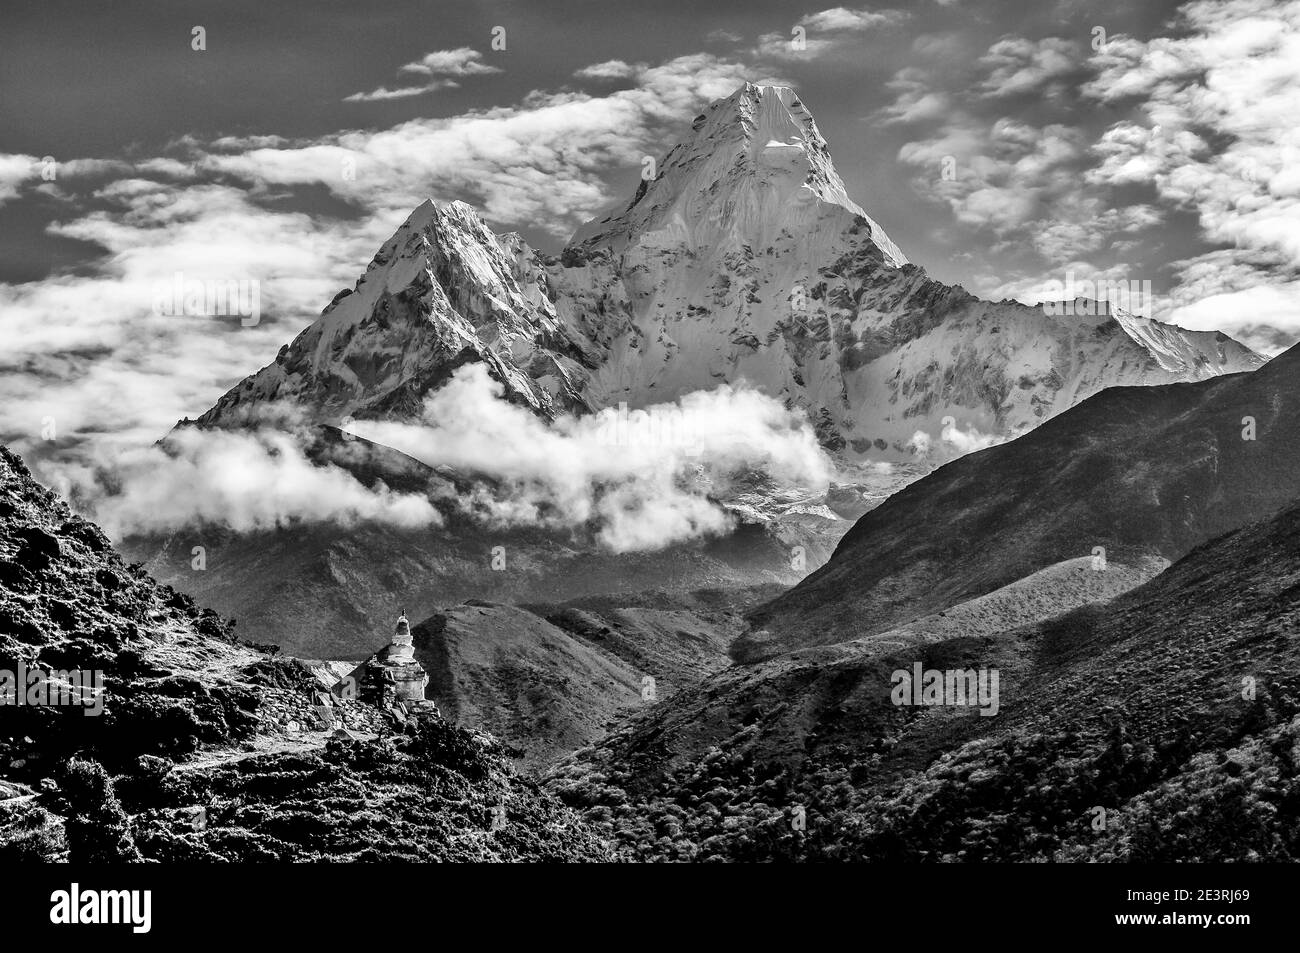 Népal. Montagnes de l'Himalaya en monochrome dans le parc national de Sagarmatha de la vallée de Solu Khumbu du Mont Everest au Népal, avec la célèbre montagne Ama Dablam vu ici depuis près du monastère de Thyangboche en route vers Gorak Shep et le camp de base d'alpinisme Everest. Banque D'Images